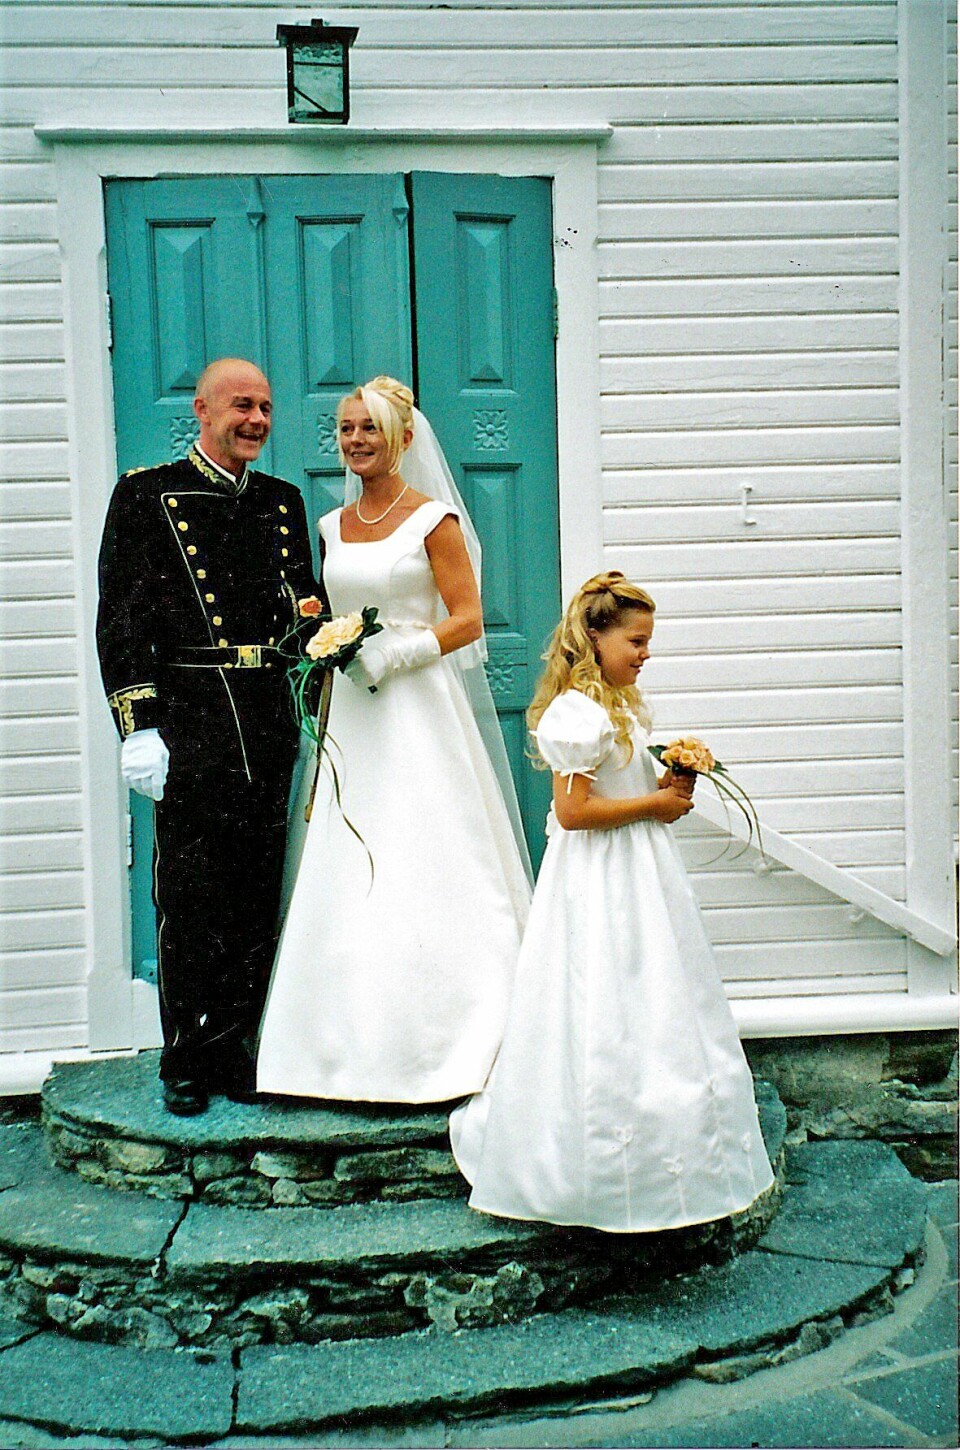 HELL I KJÆRLIGHET: Stian Elle og Sølvi Ersland giftet seg på hans 40-årsdag, den 4. august 2000. Erslands datter var brudepike.